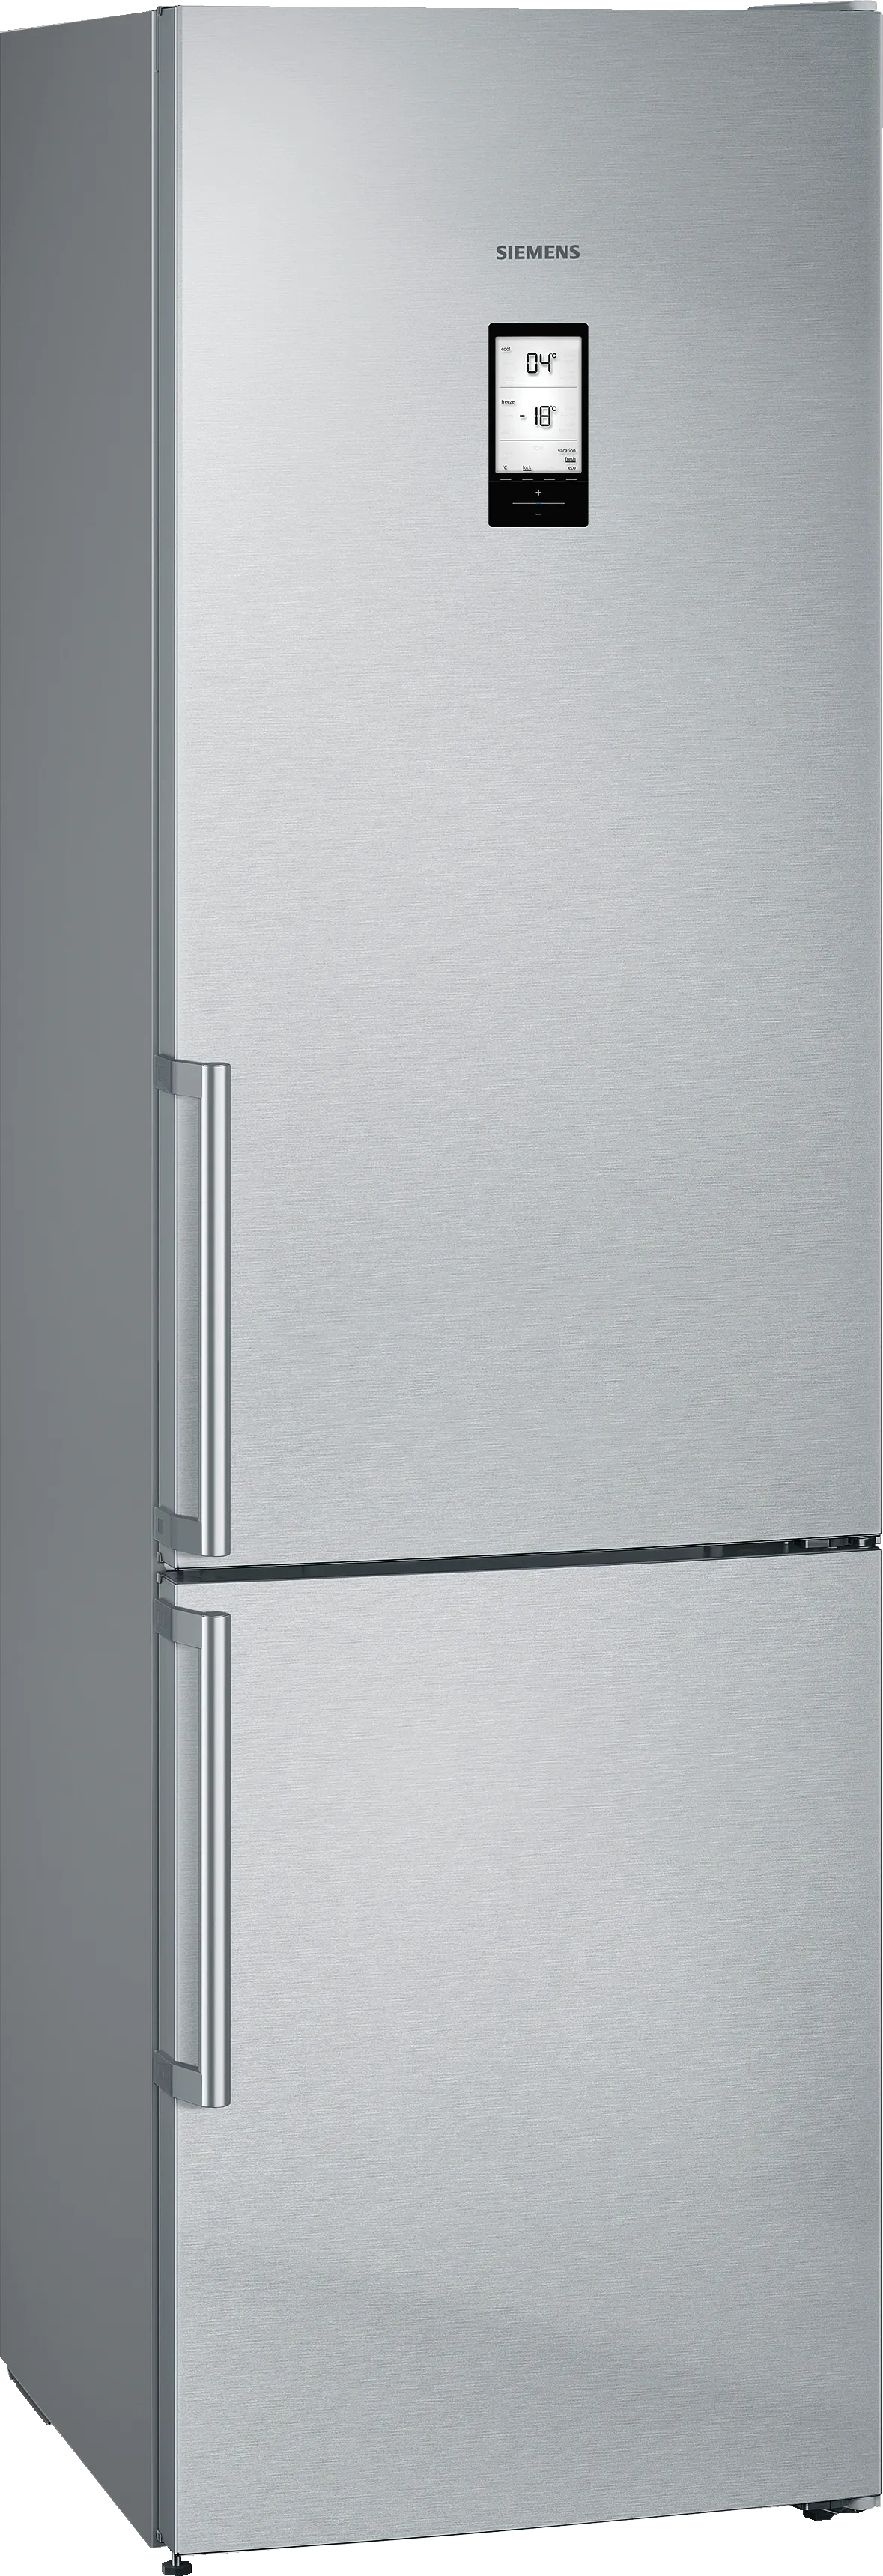 iQ500 Отдельно стоящий холодильник с нижней морозильной камерой 203 x 60 cm Нерж. ст. легкой очистки 